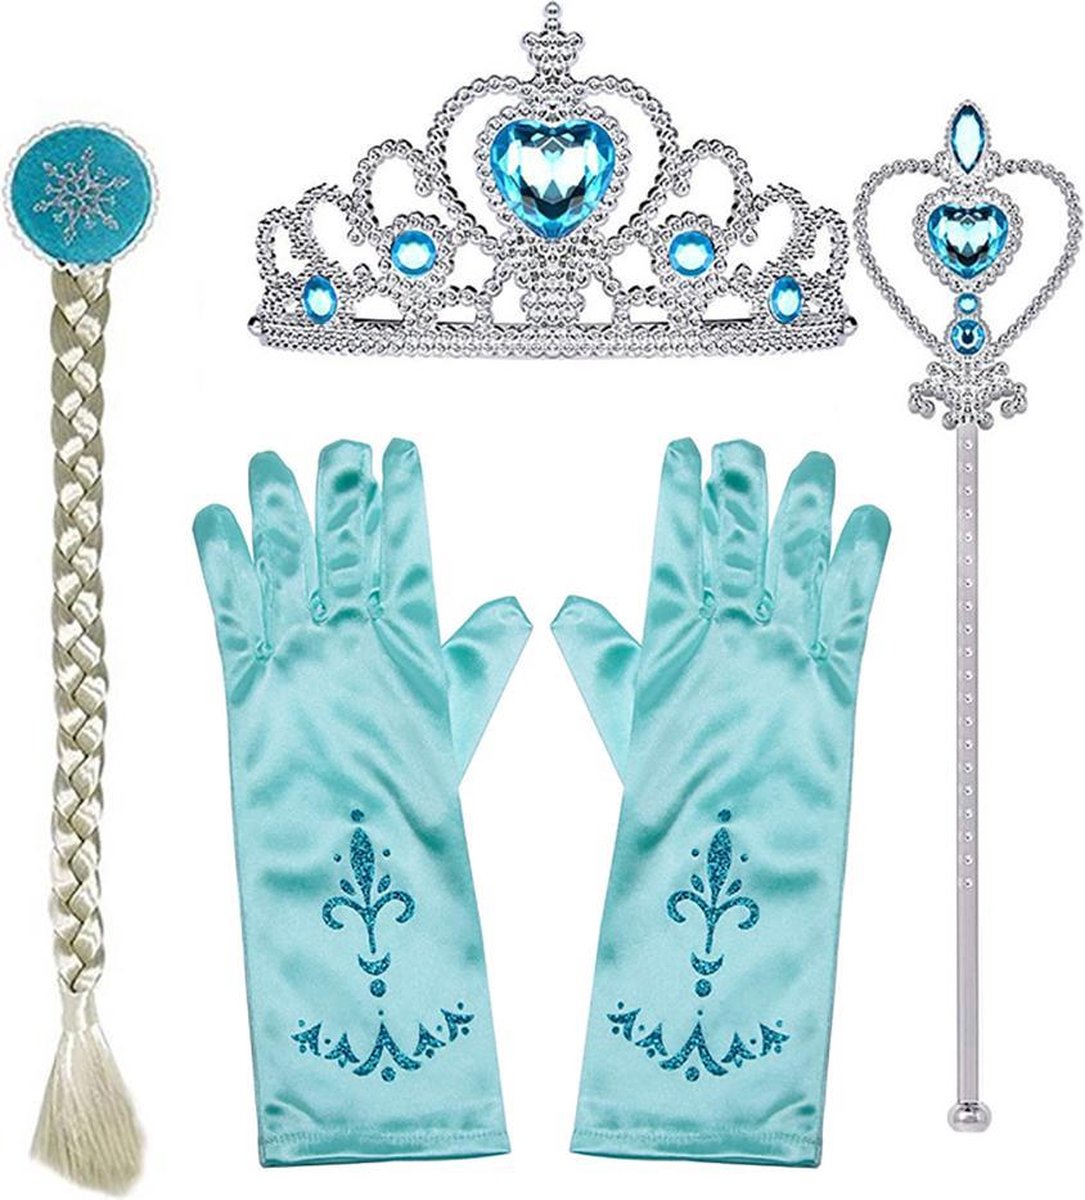 Speelgoed 3 jaar - voor bij je Elsa prinsessenjurk - Het Betere Merk - verkleedkleren meisje - Prinsessen accessoires - Blauw - Prinsessenkroon - Toverstaf meisje - Handschoenen - Haarvlecht - Prinsessen speelgoed - Cadeau meisje - Verjaardag meisje - Het Betere Merk